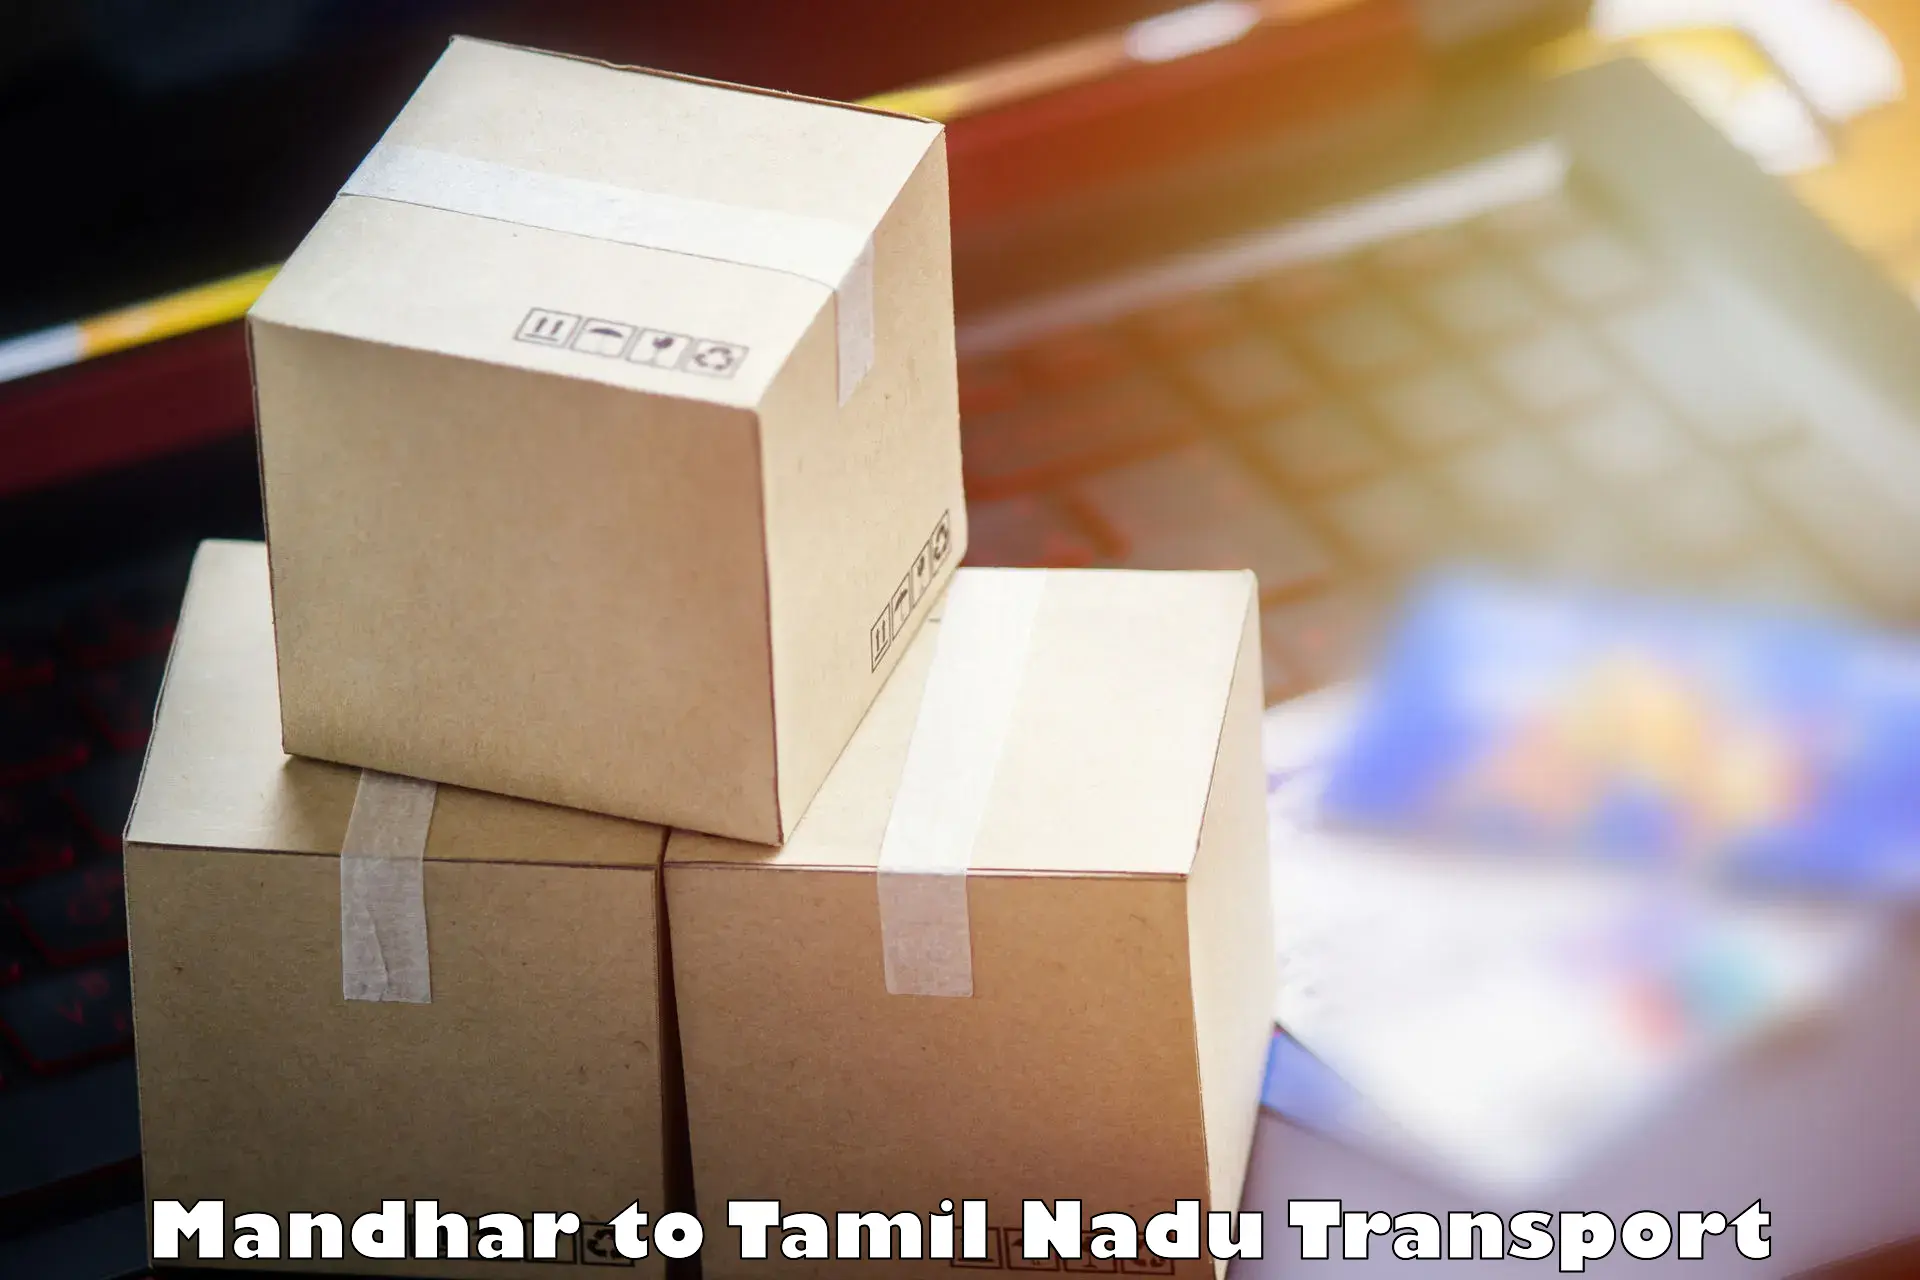 Parcel transport services Mandhar to Mannargudi